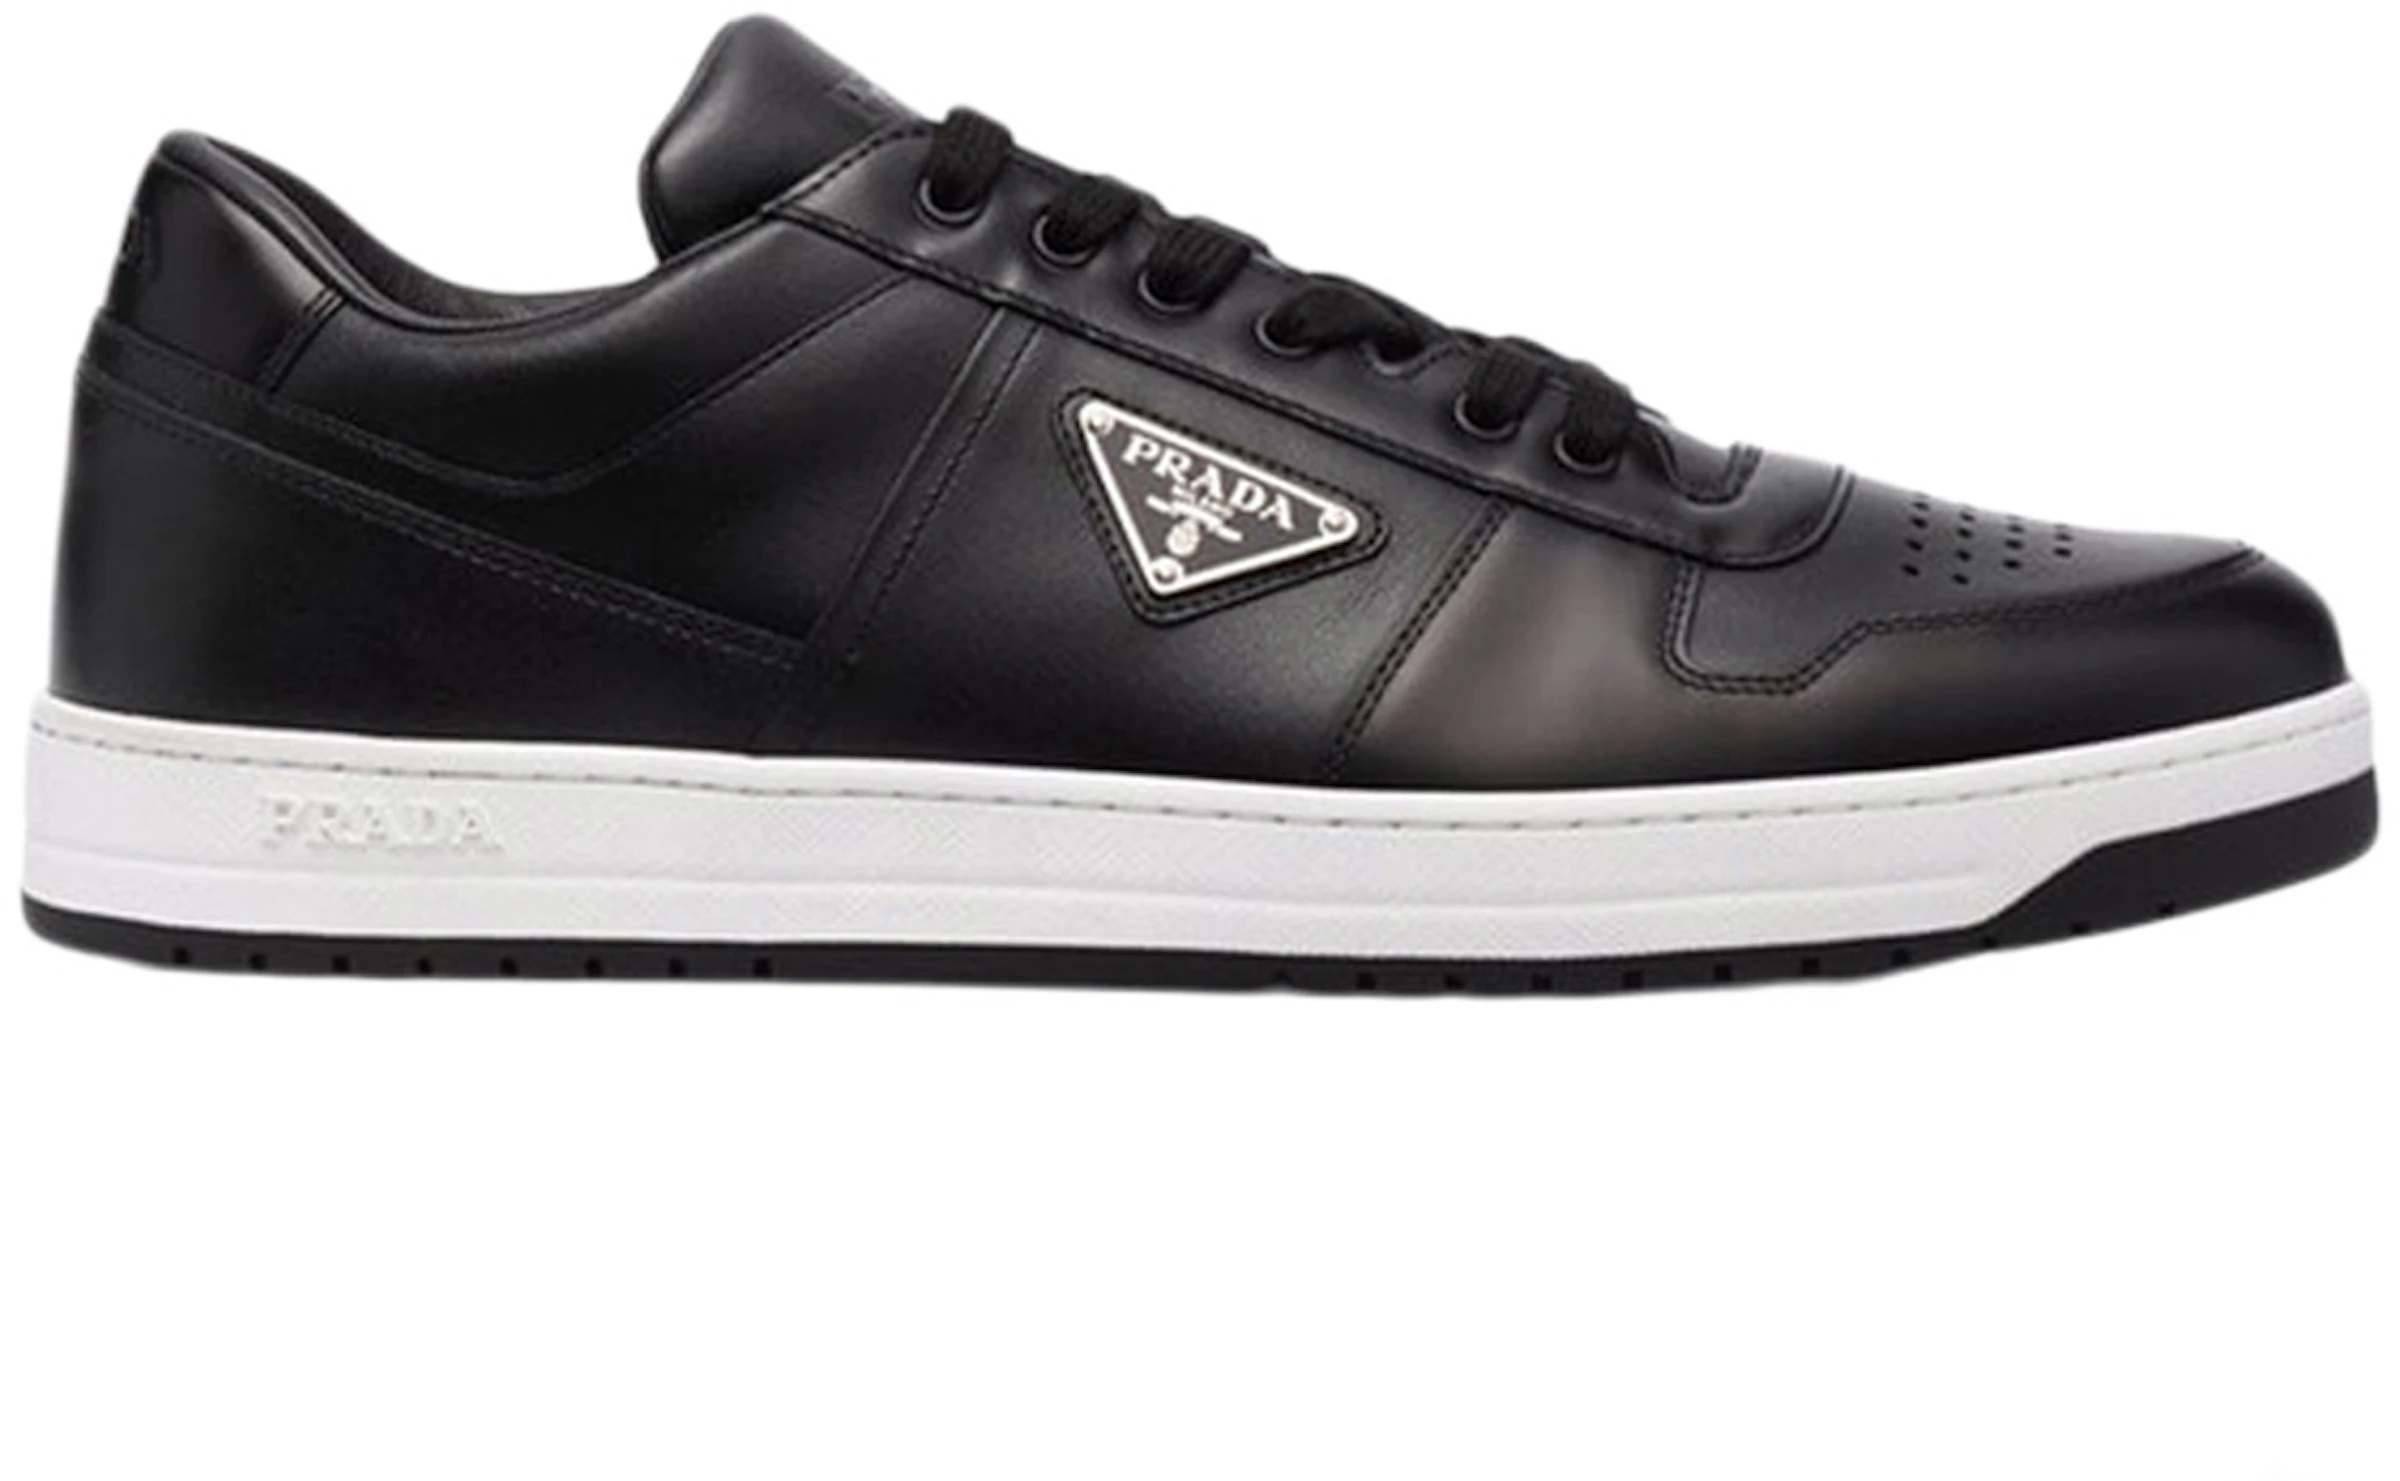 Prada Downtown Low Top Sneakers Leather Black Black White -  2EE364_3LJ6_F0002 - US